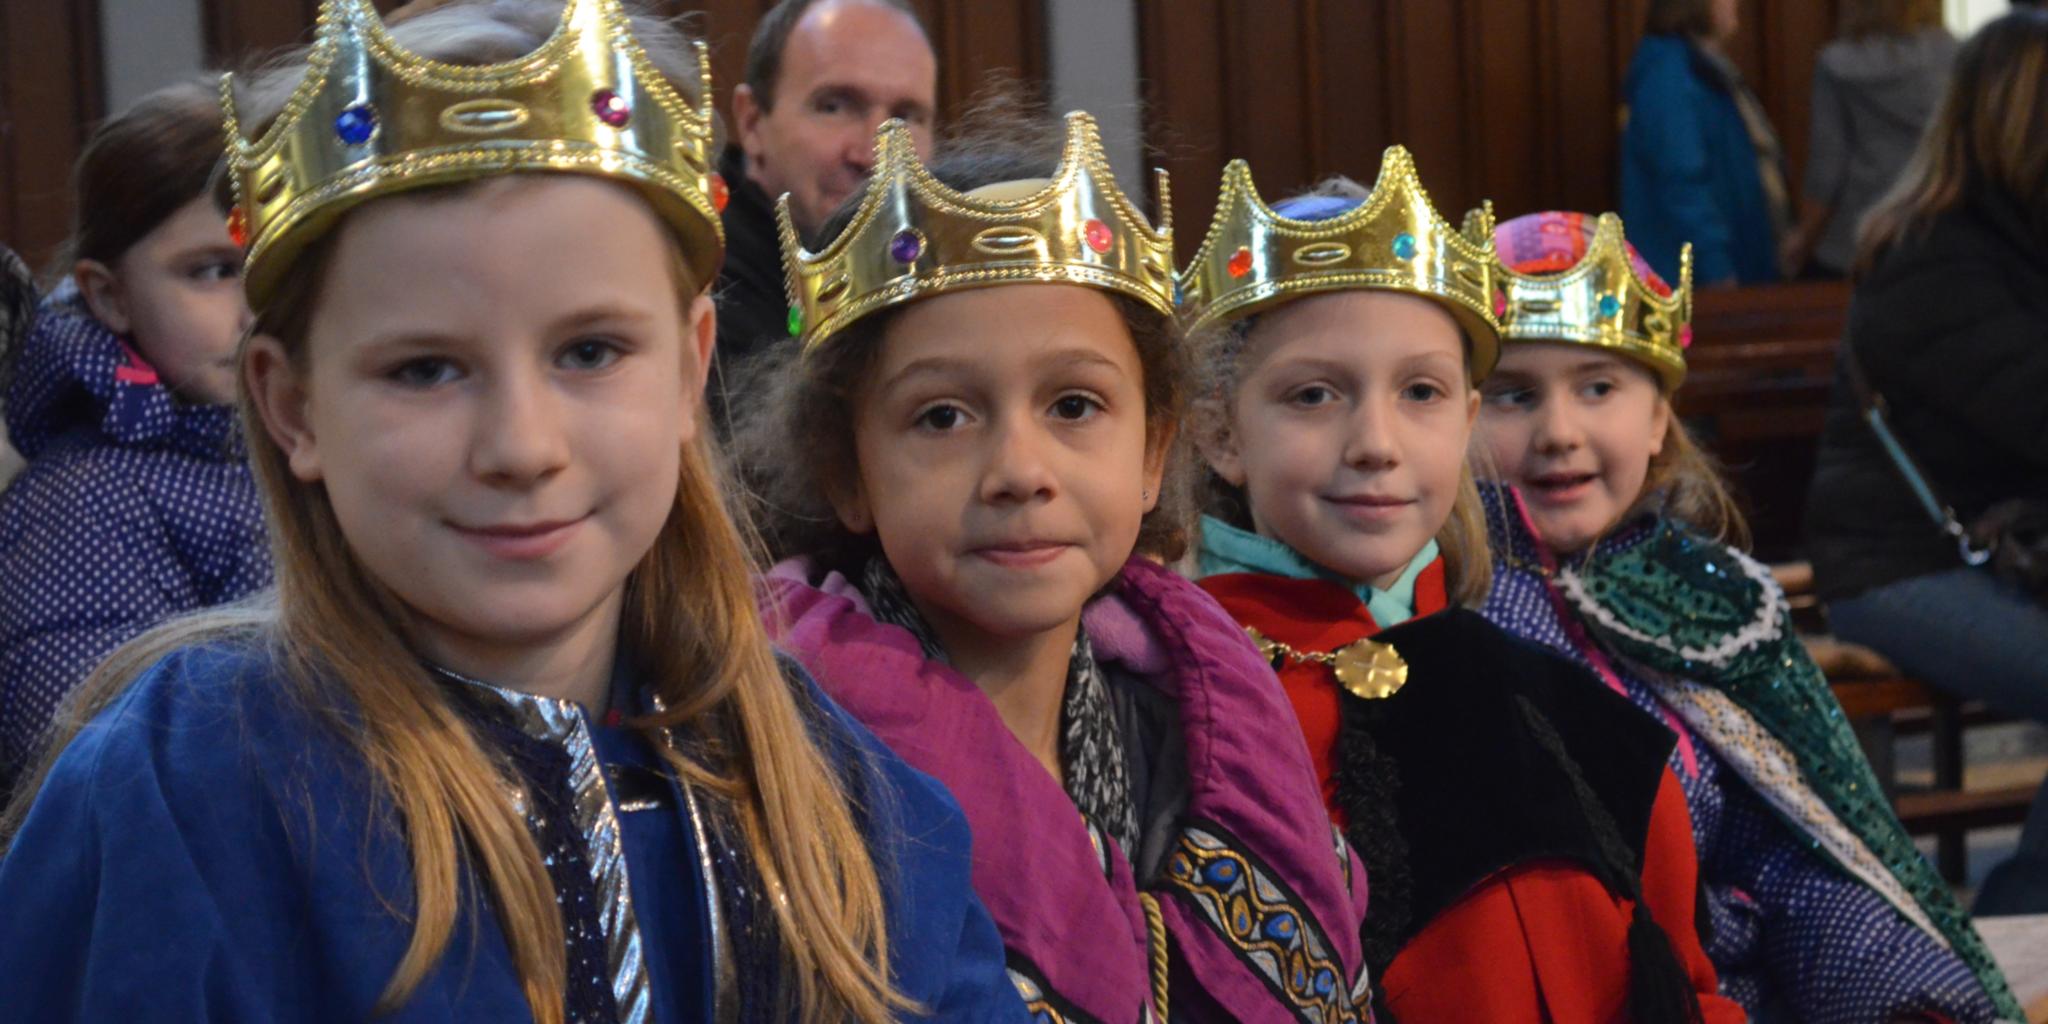 In 722 Gruppen waren kleine Königinnen und Könige in diesem Jahr unterwegs.